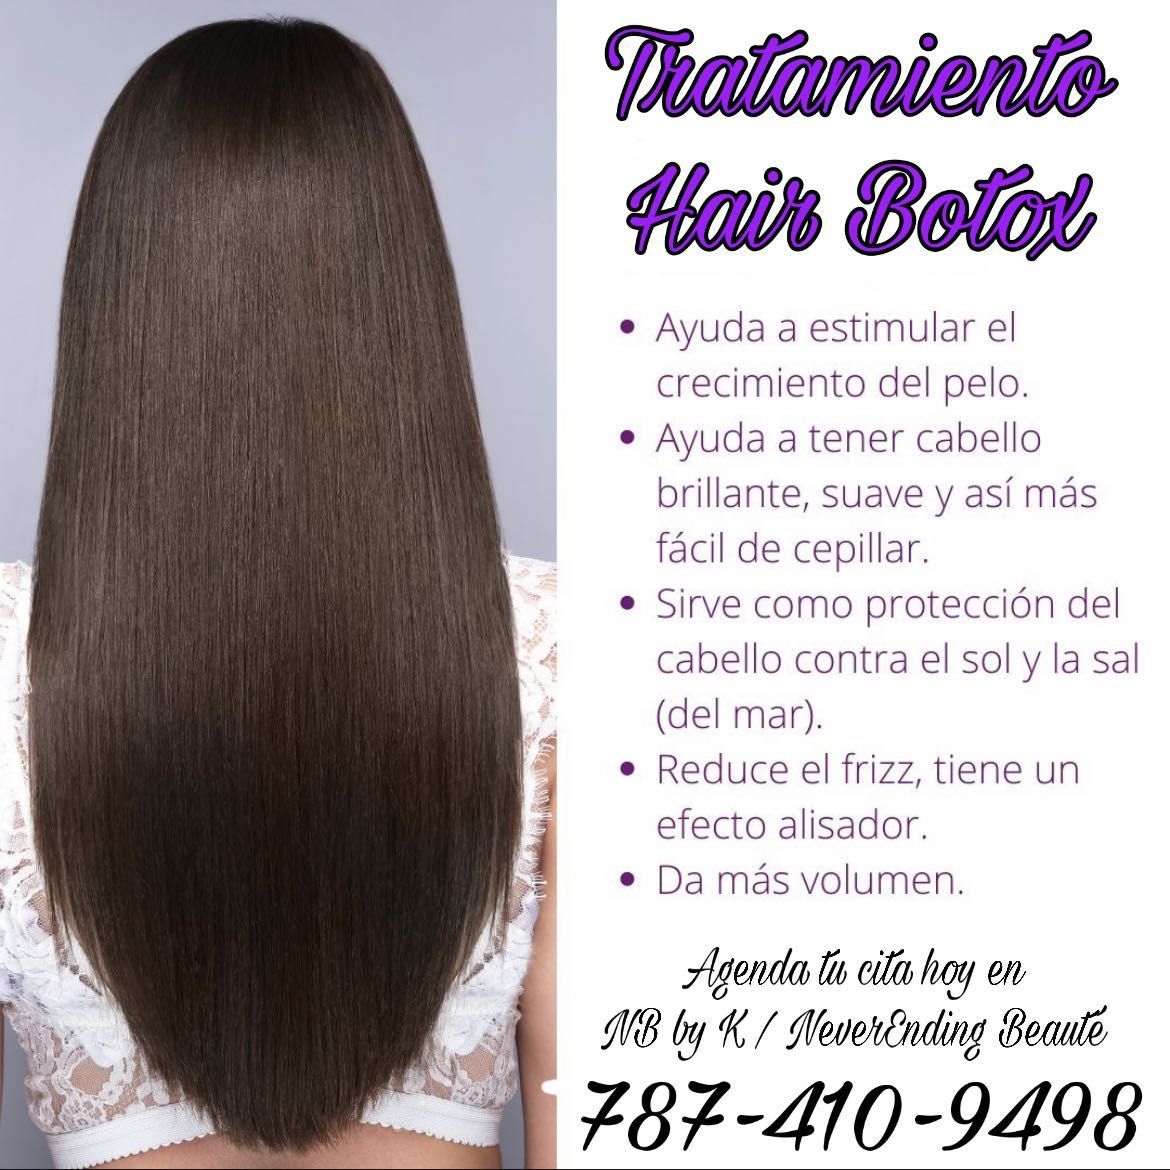 Tratamiento Hair Botox 😊🌈💃🏼 ♥️ portfolio